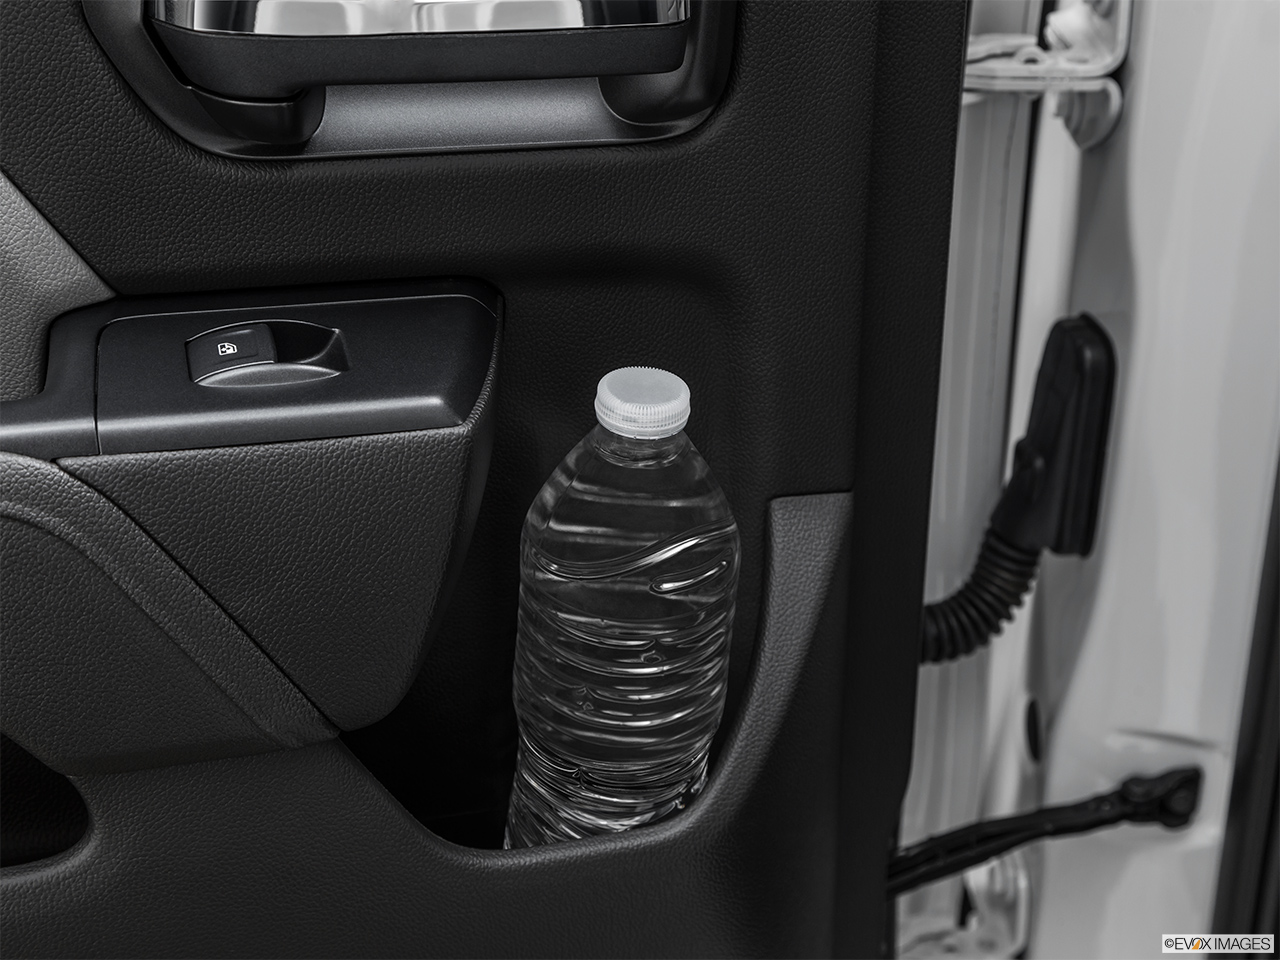 2019 GMC Sierra 2500HD Base Second row side cup holder with coffee prop, or second row door cup holder with water bottle. 